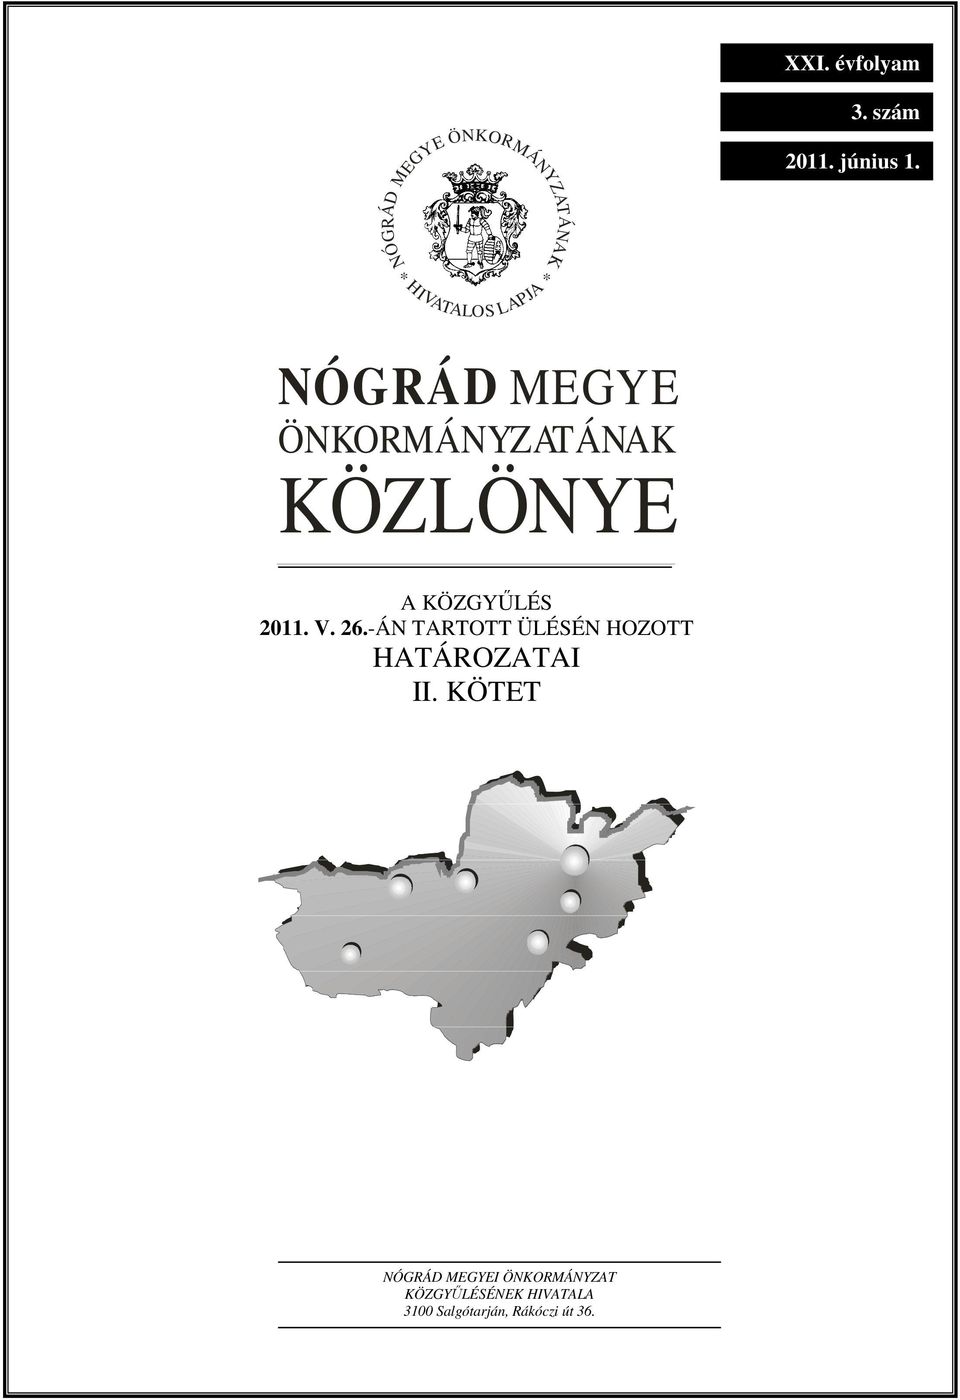 ÖNKORMÁNYZATÁNAK KÖZLÖNYE A KÖZGYŐLÉS 2011. V. 26.